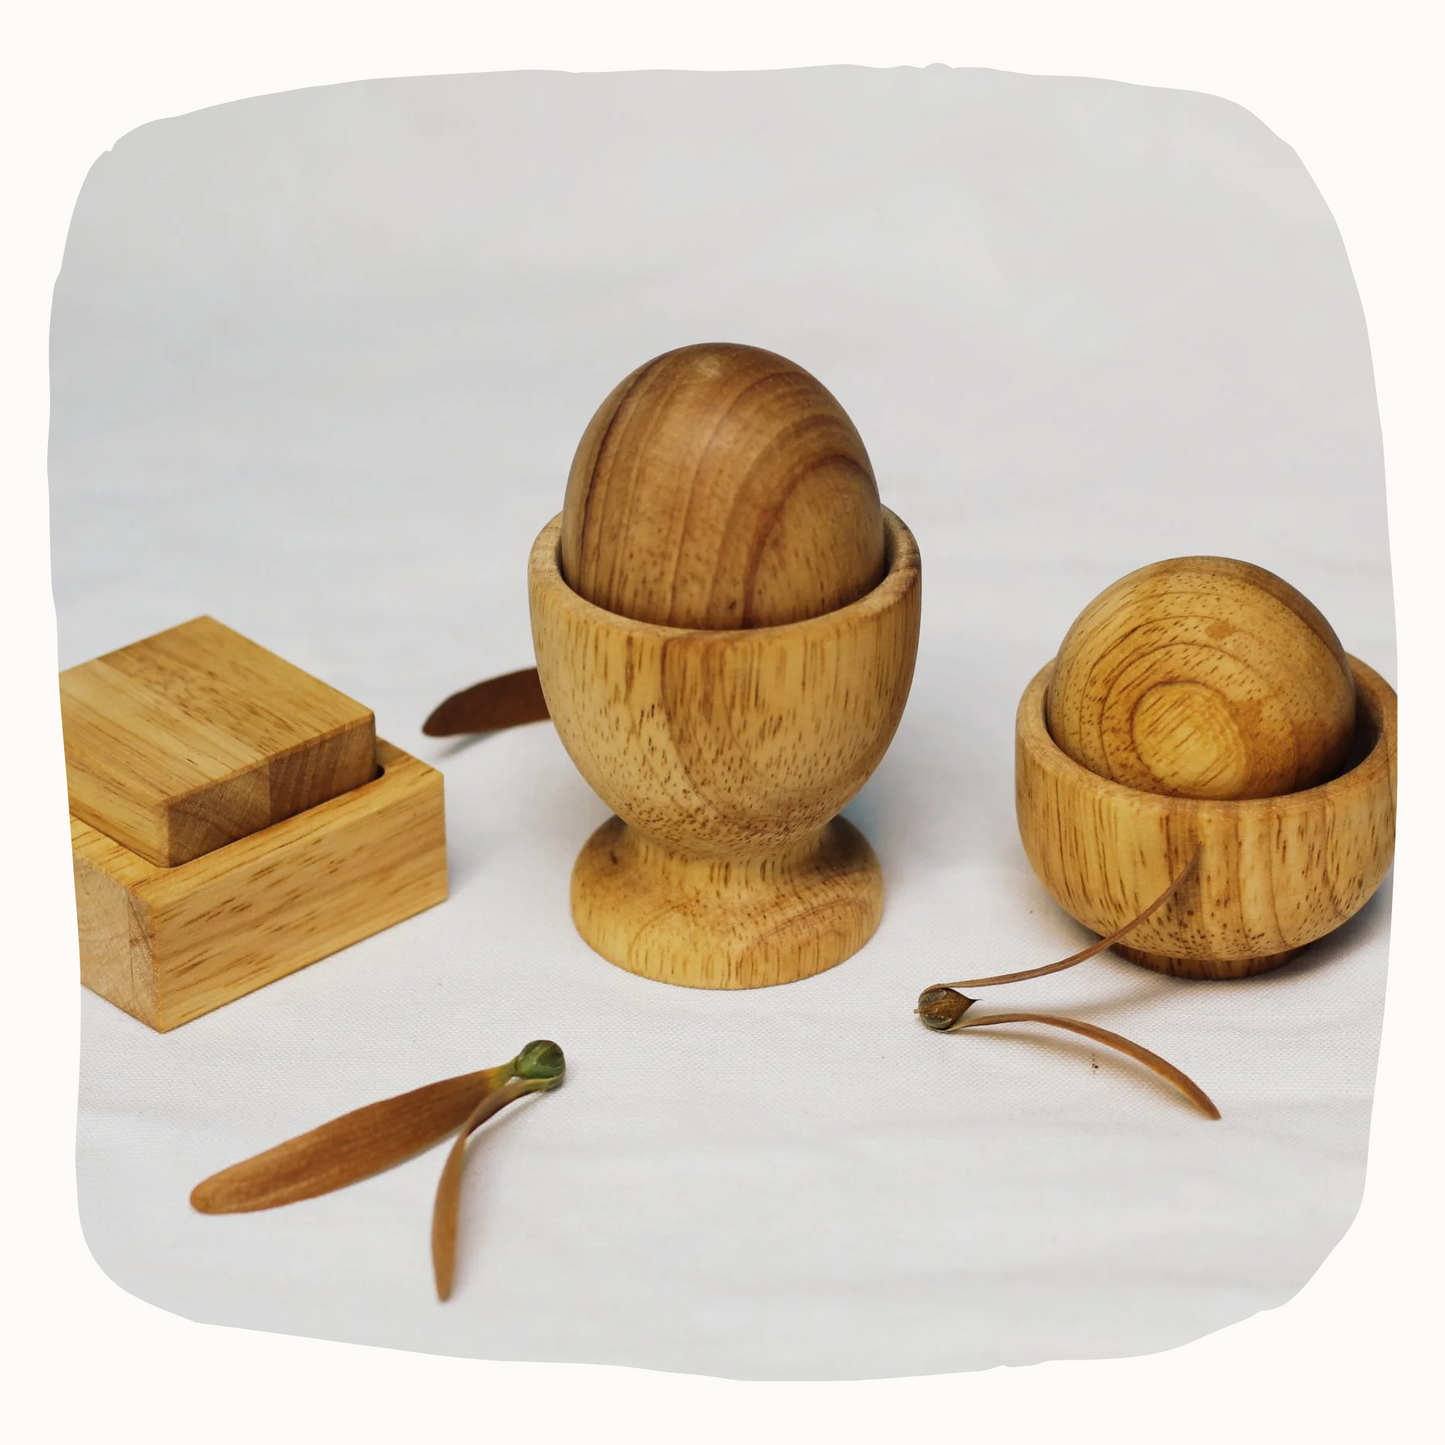 Montessori Egg, Ball and Cup set